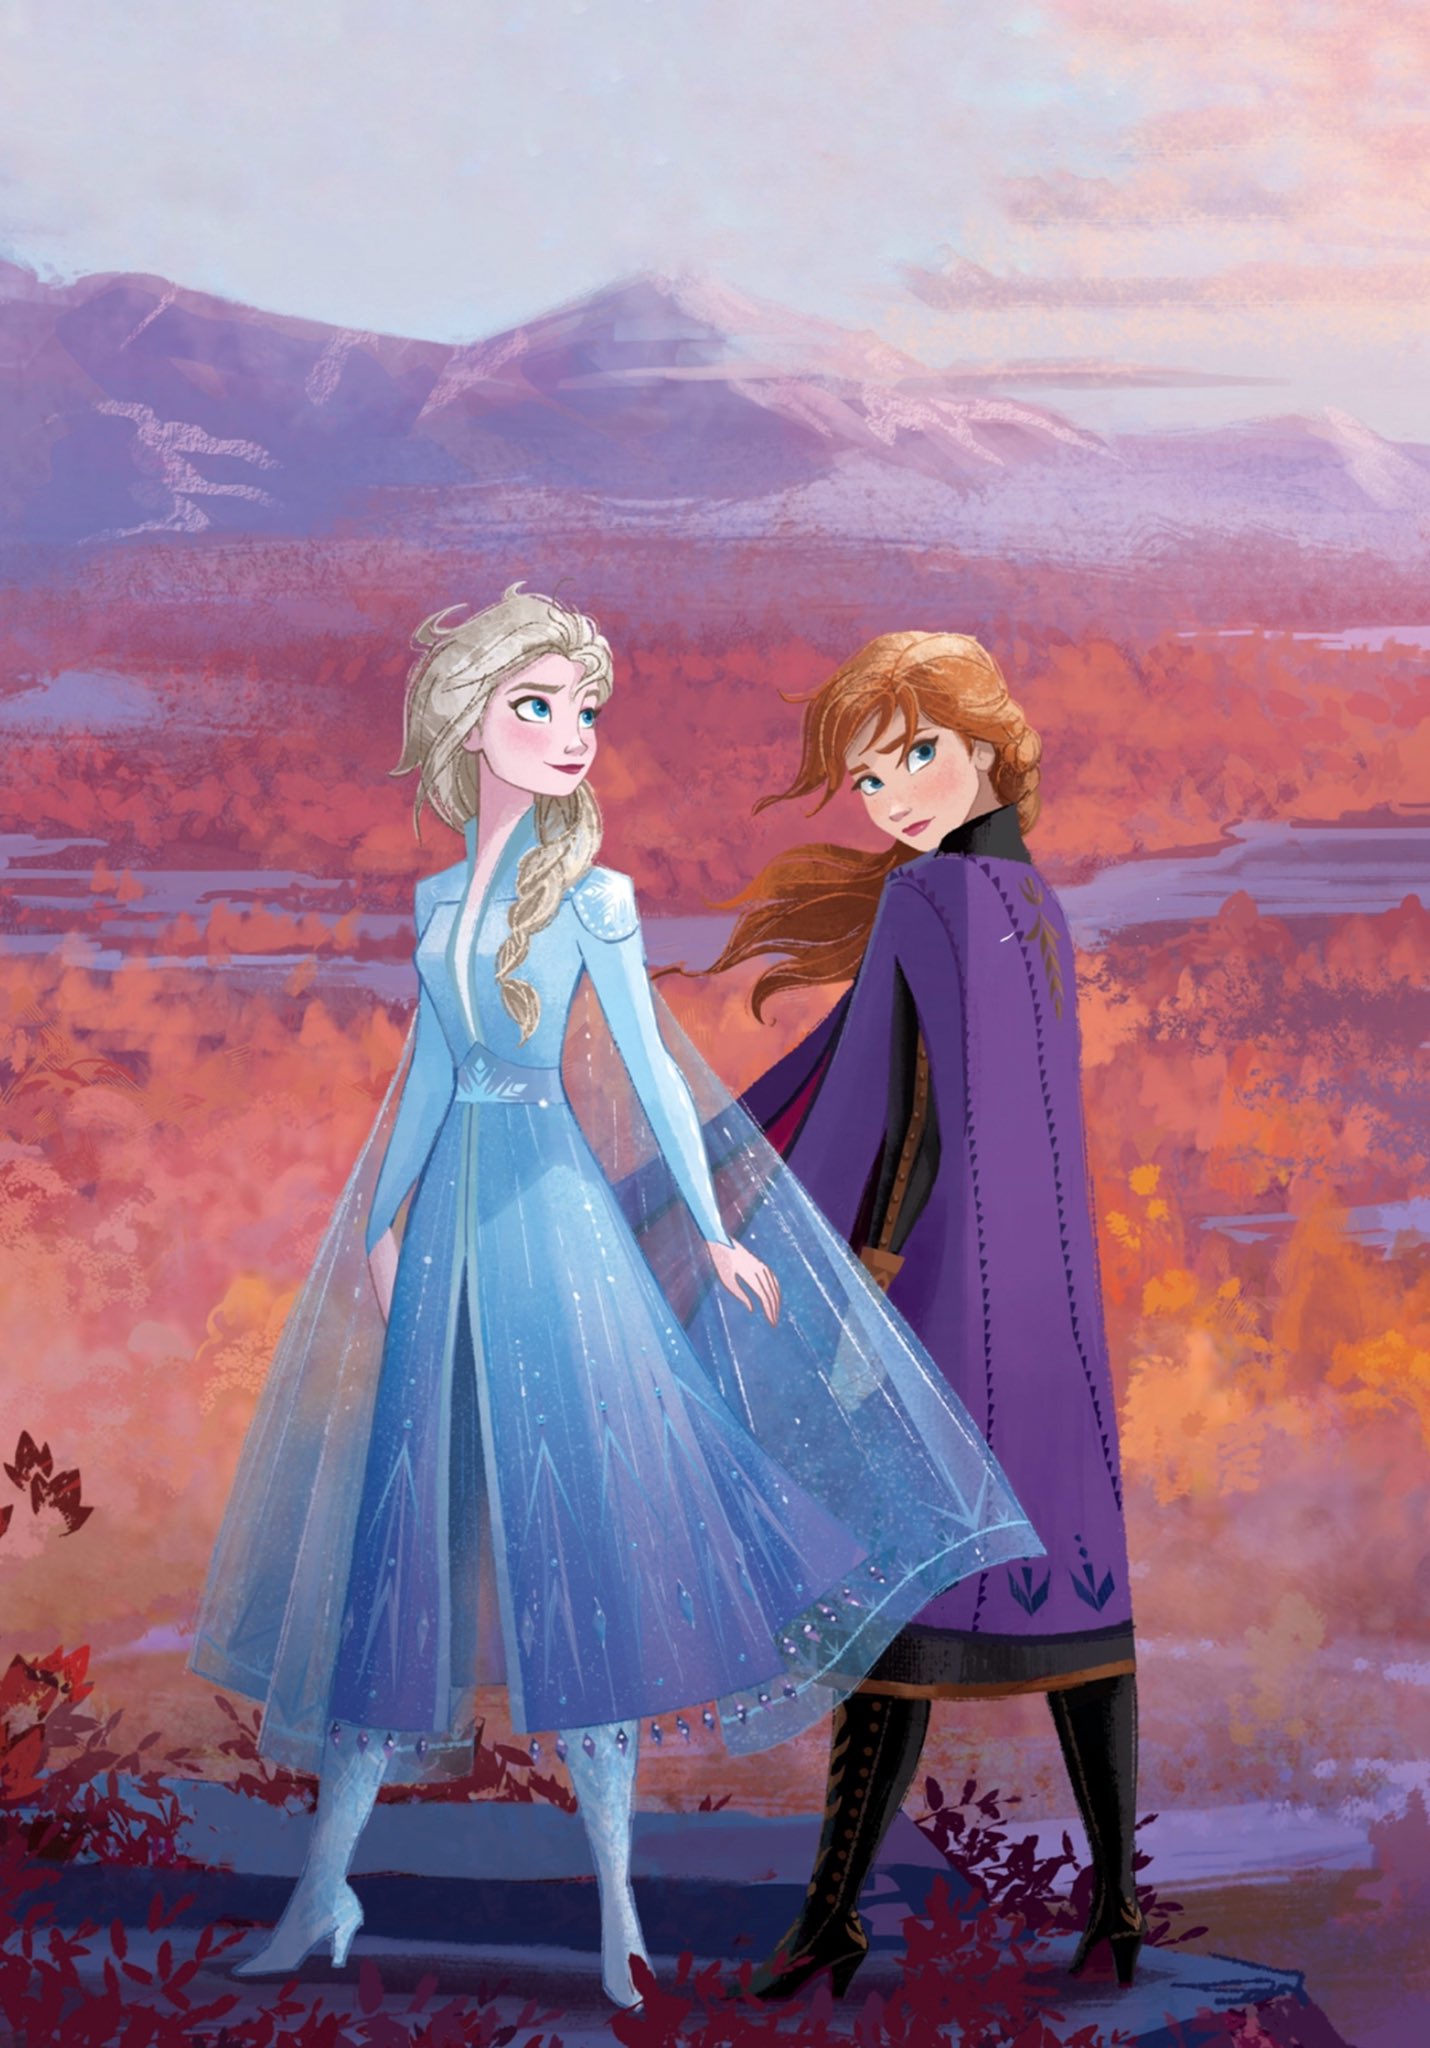 Disney's アナと雪の女王 2 Images on Fanpop							 アナと雪の女王 2 Phone 壁紙